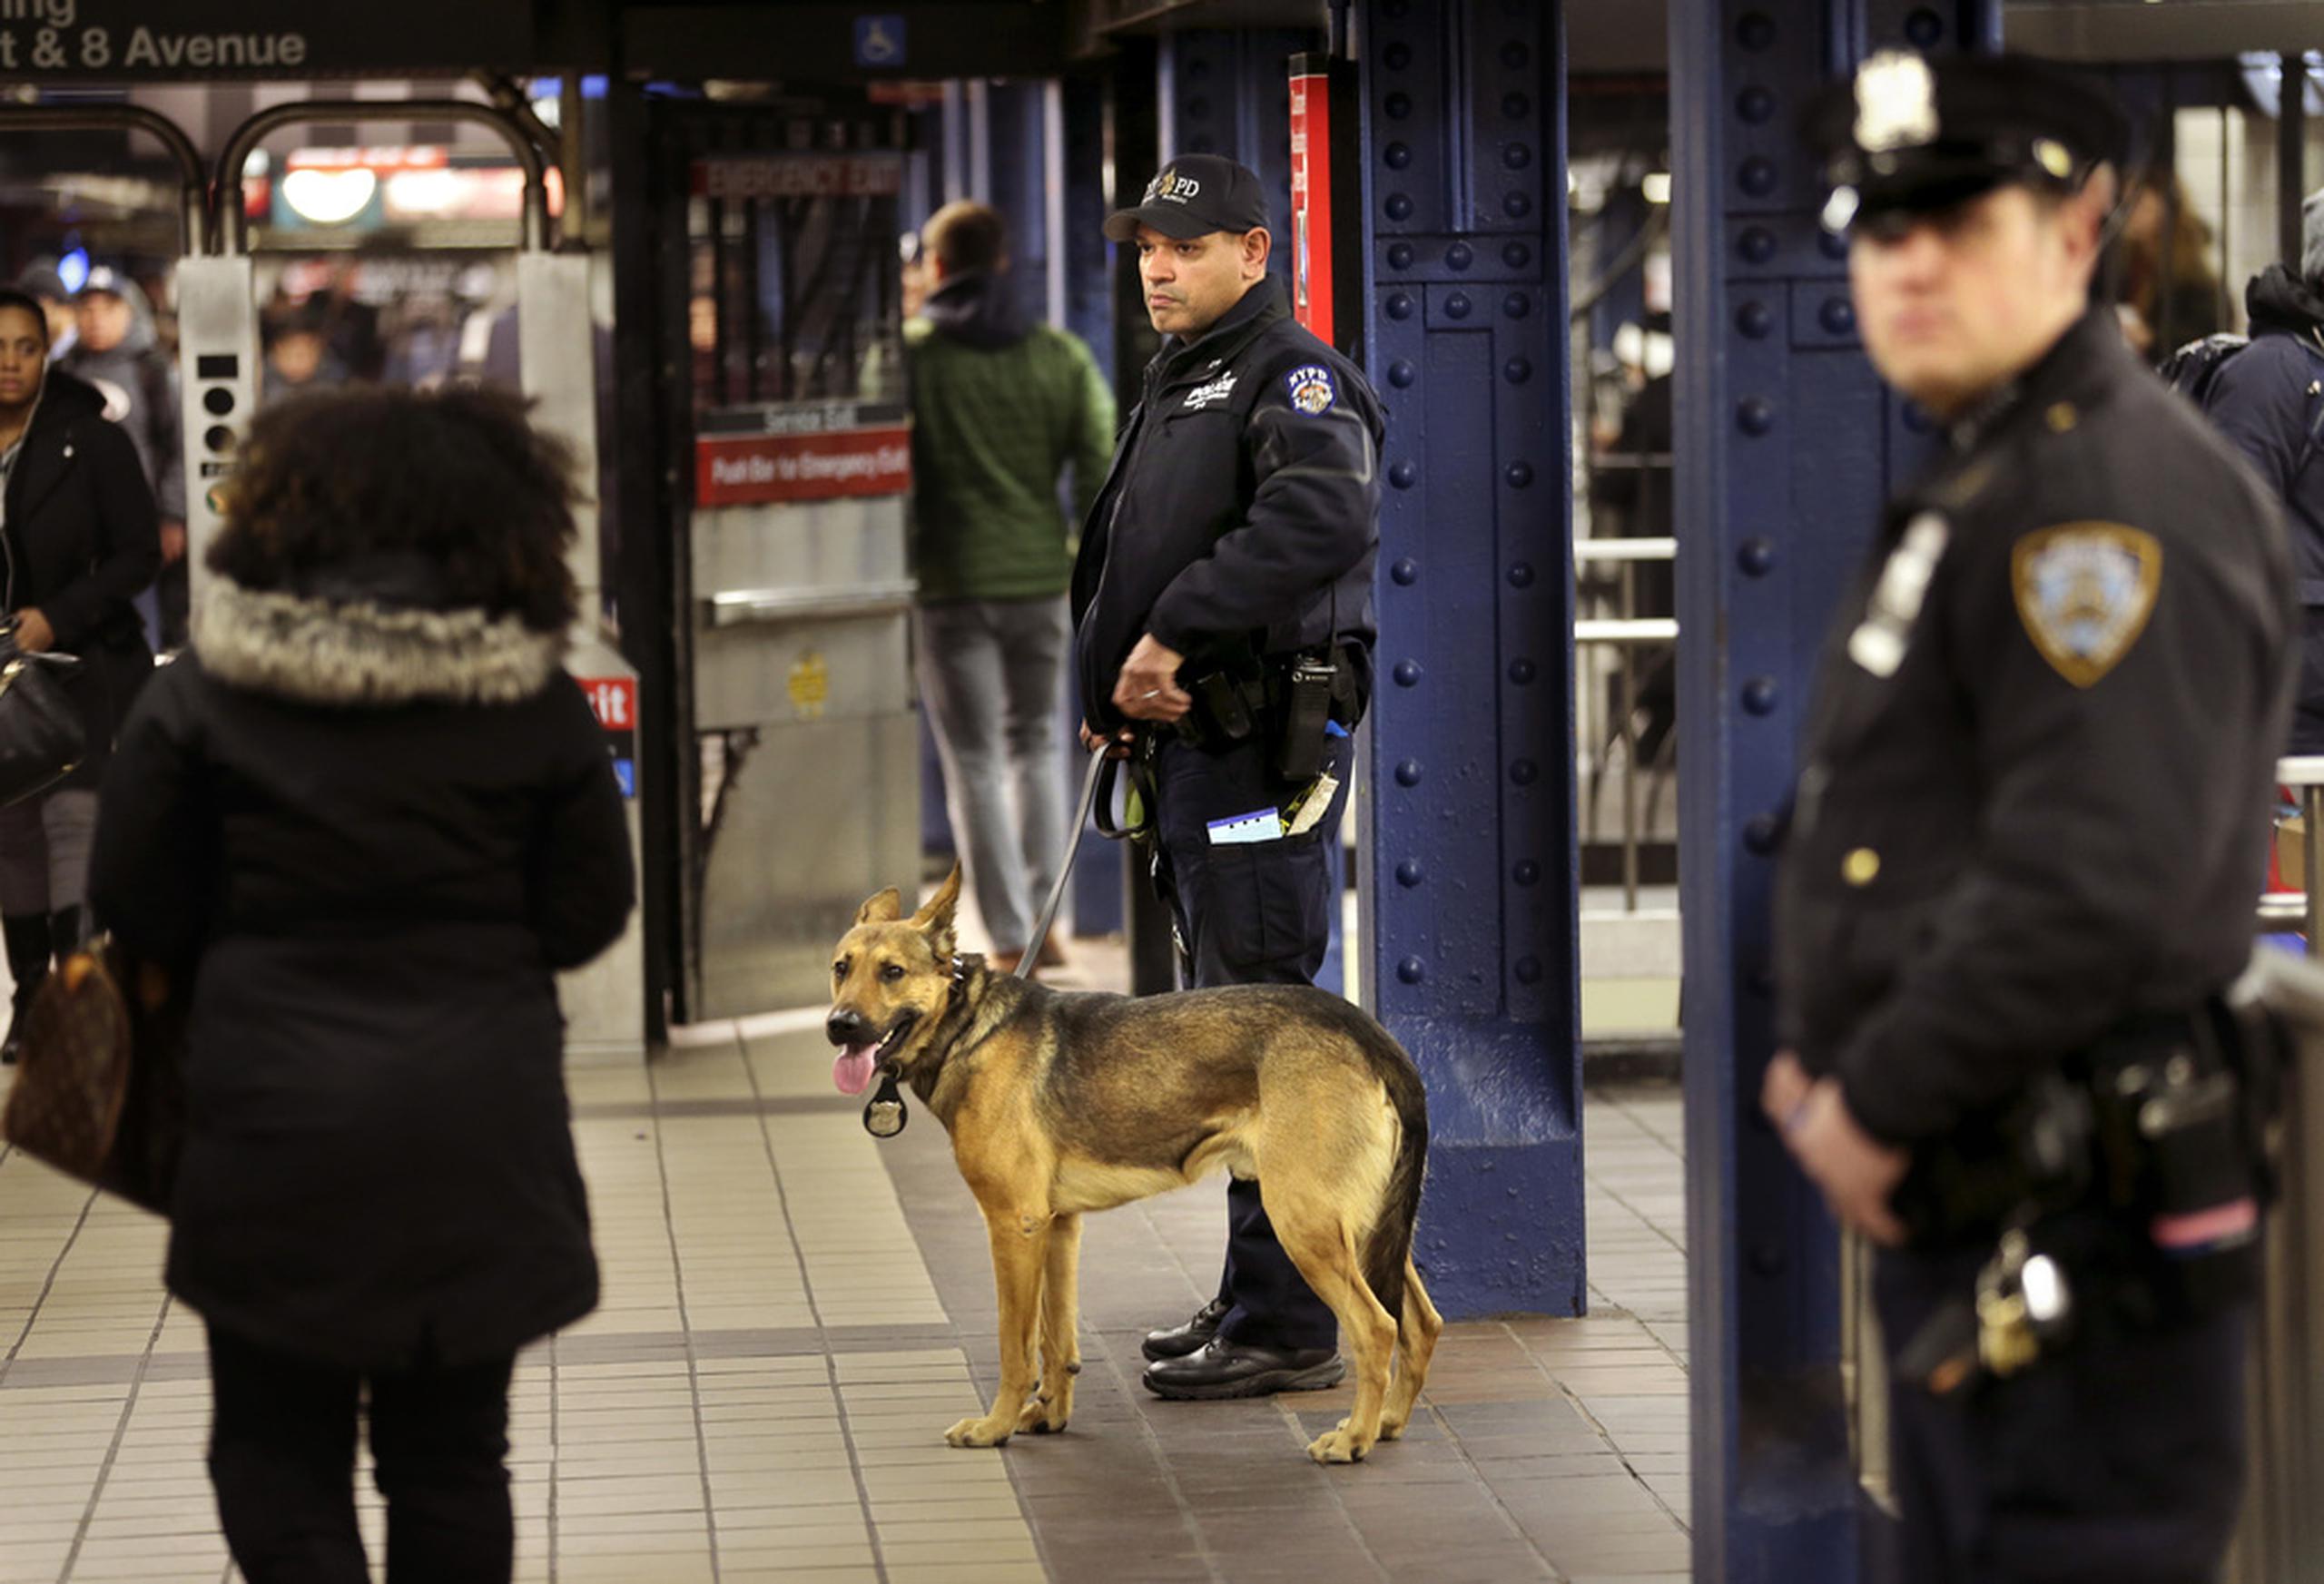 La tragedia ocurrió el mismo día en que las autoridades neoyorquinas anunciaron planes de despachar a 800 policías más al sistema de tren subterráneo para combatir la evasión de tarifas.